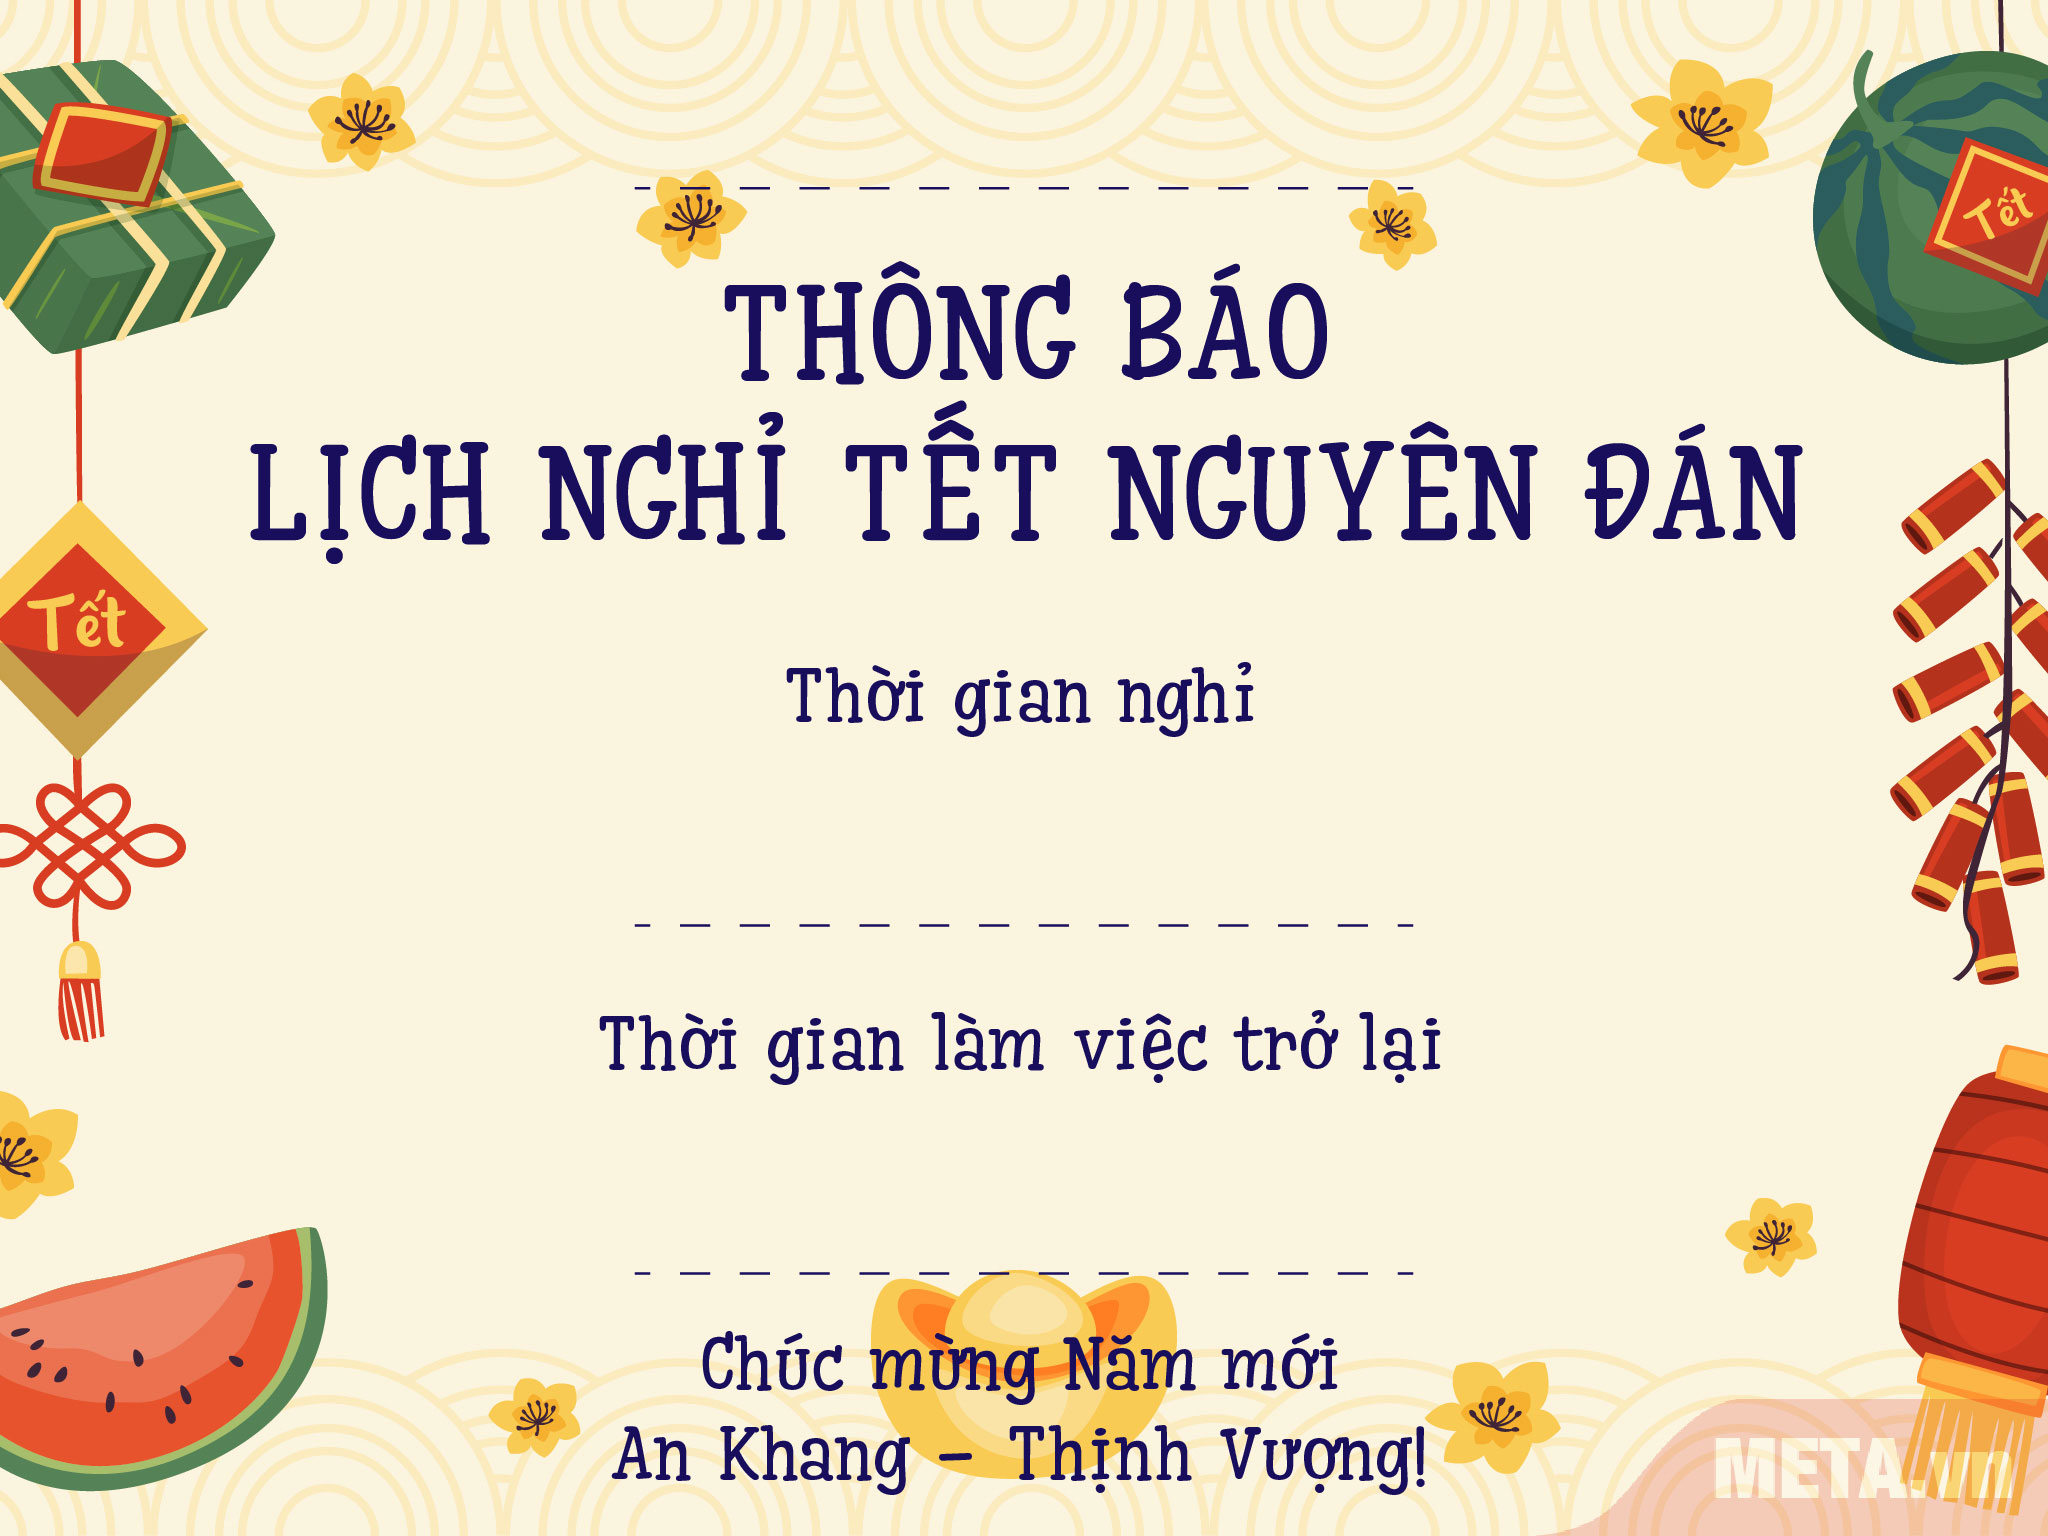 Mẫu thiệp thông báo nghỉ tết: Thiệp thông báo nghỉ Tết là một nét đẹp văn hóa truyền thống của người Việt. Hãy tham khảo mẫu thiệp thông báo nghỉ Tết tại trang web của chúng tôi để có thể tự tay thiết kế cho gia đình và bạn bè một món quà ý nghĩa.